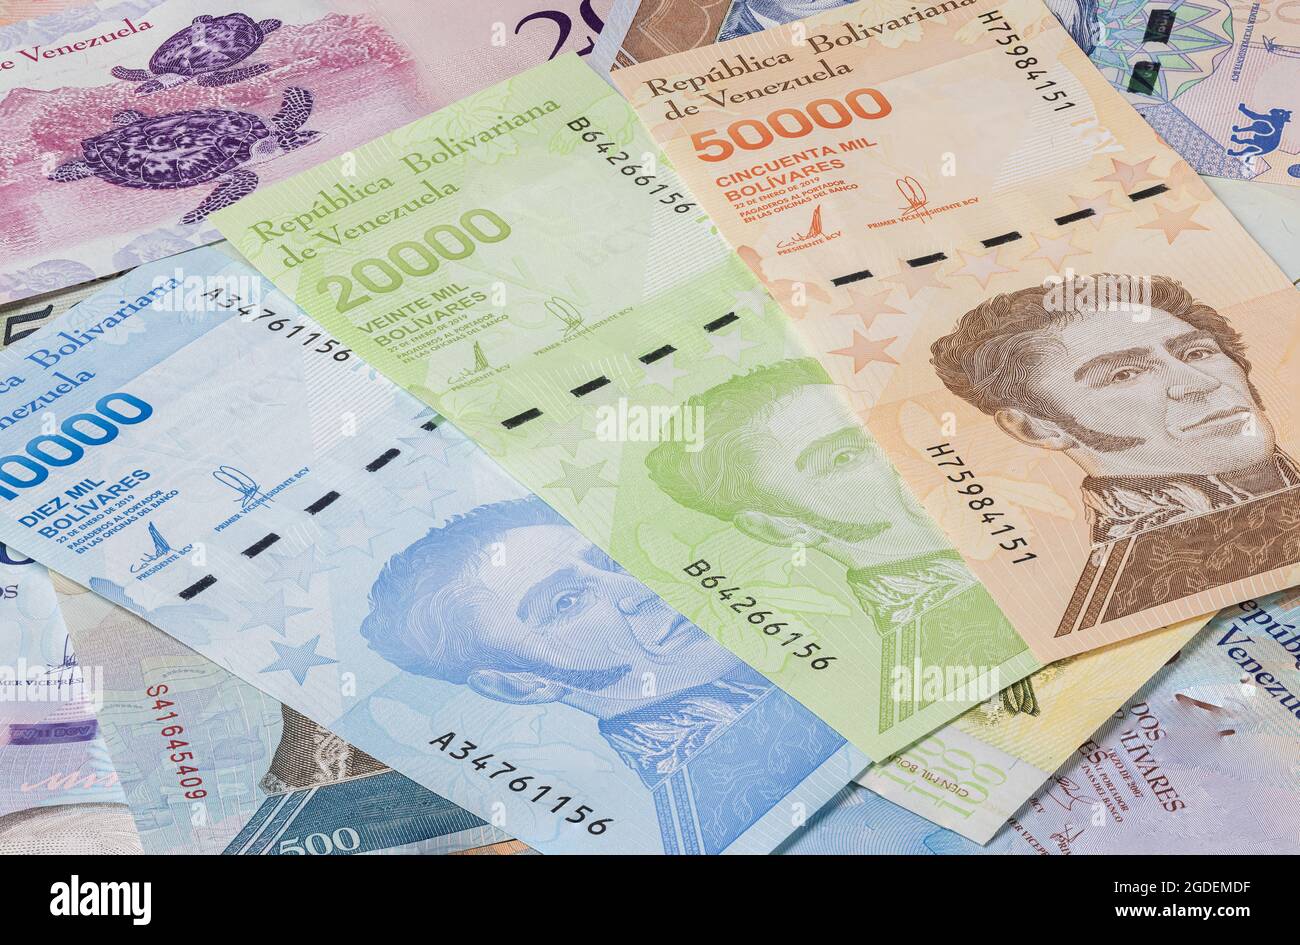 Proche de la monnaie du pays sud-américain Venezuela. Une inflation élevée et une économie faible augmentent la dénomination des billets. Bolivar Banque D'Images